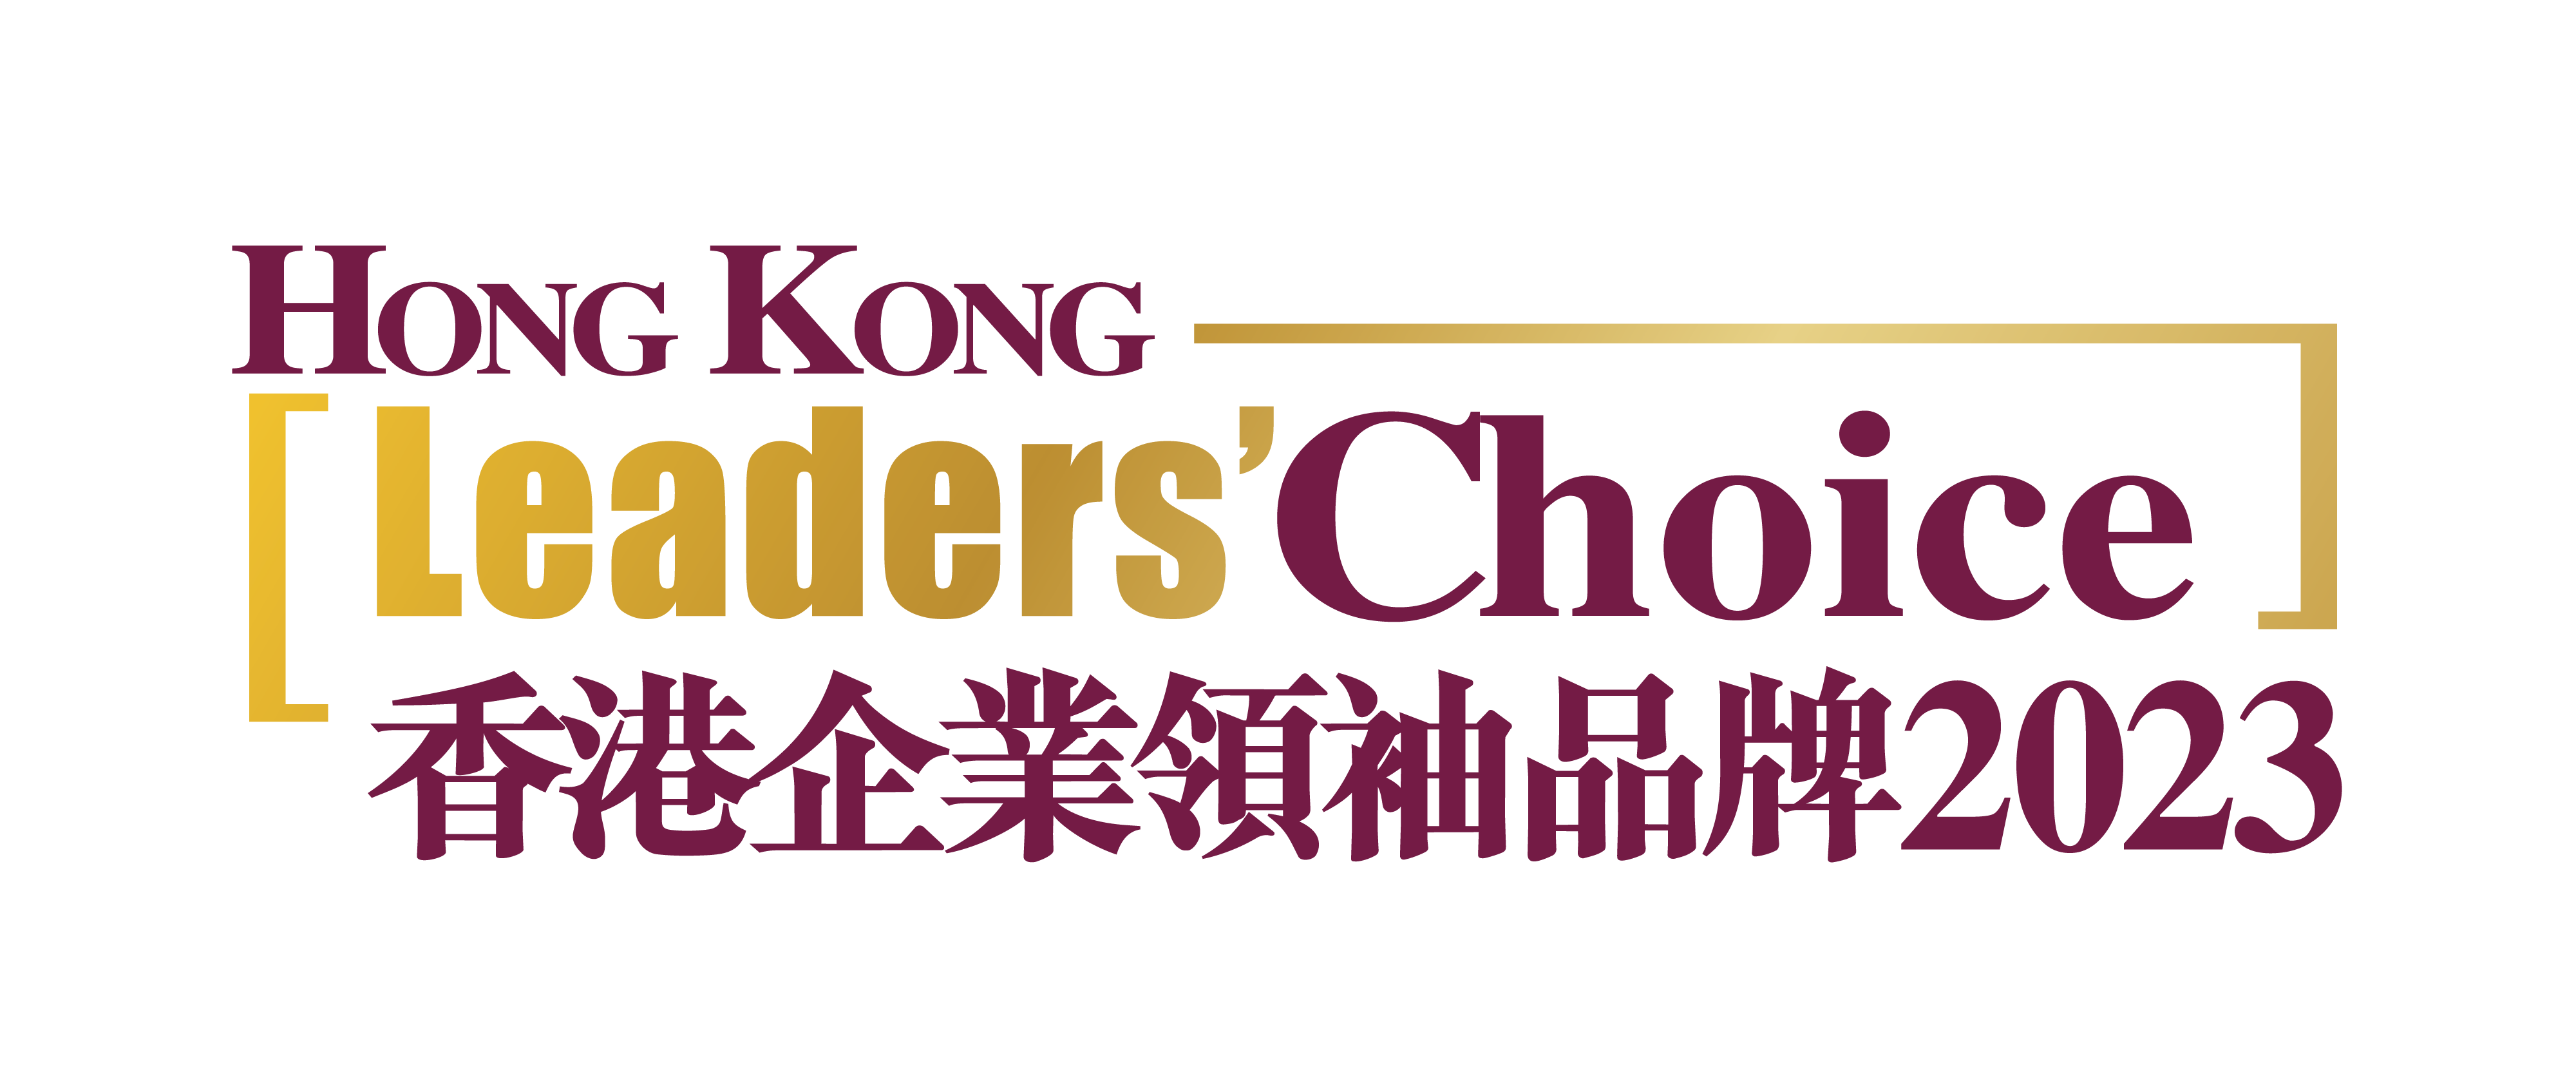 2023 Hong Kong Leaders' Choice Brand Awards